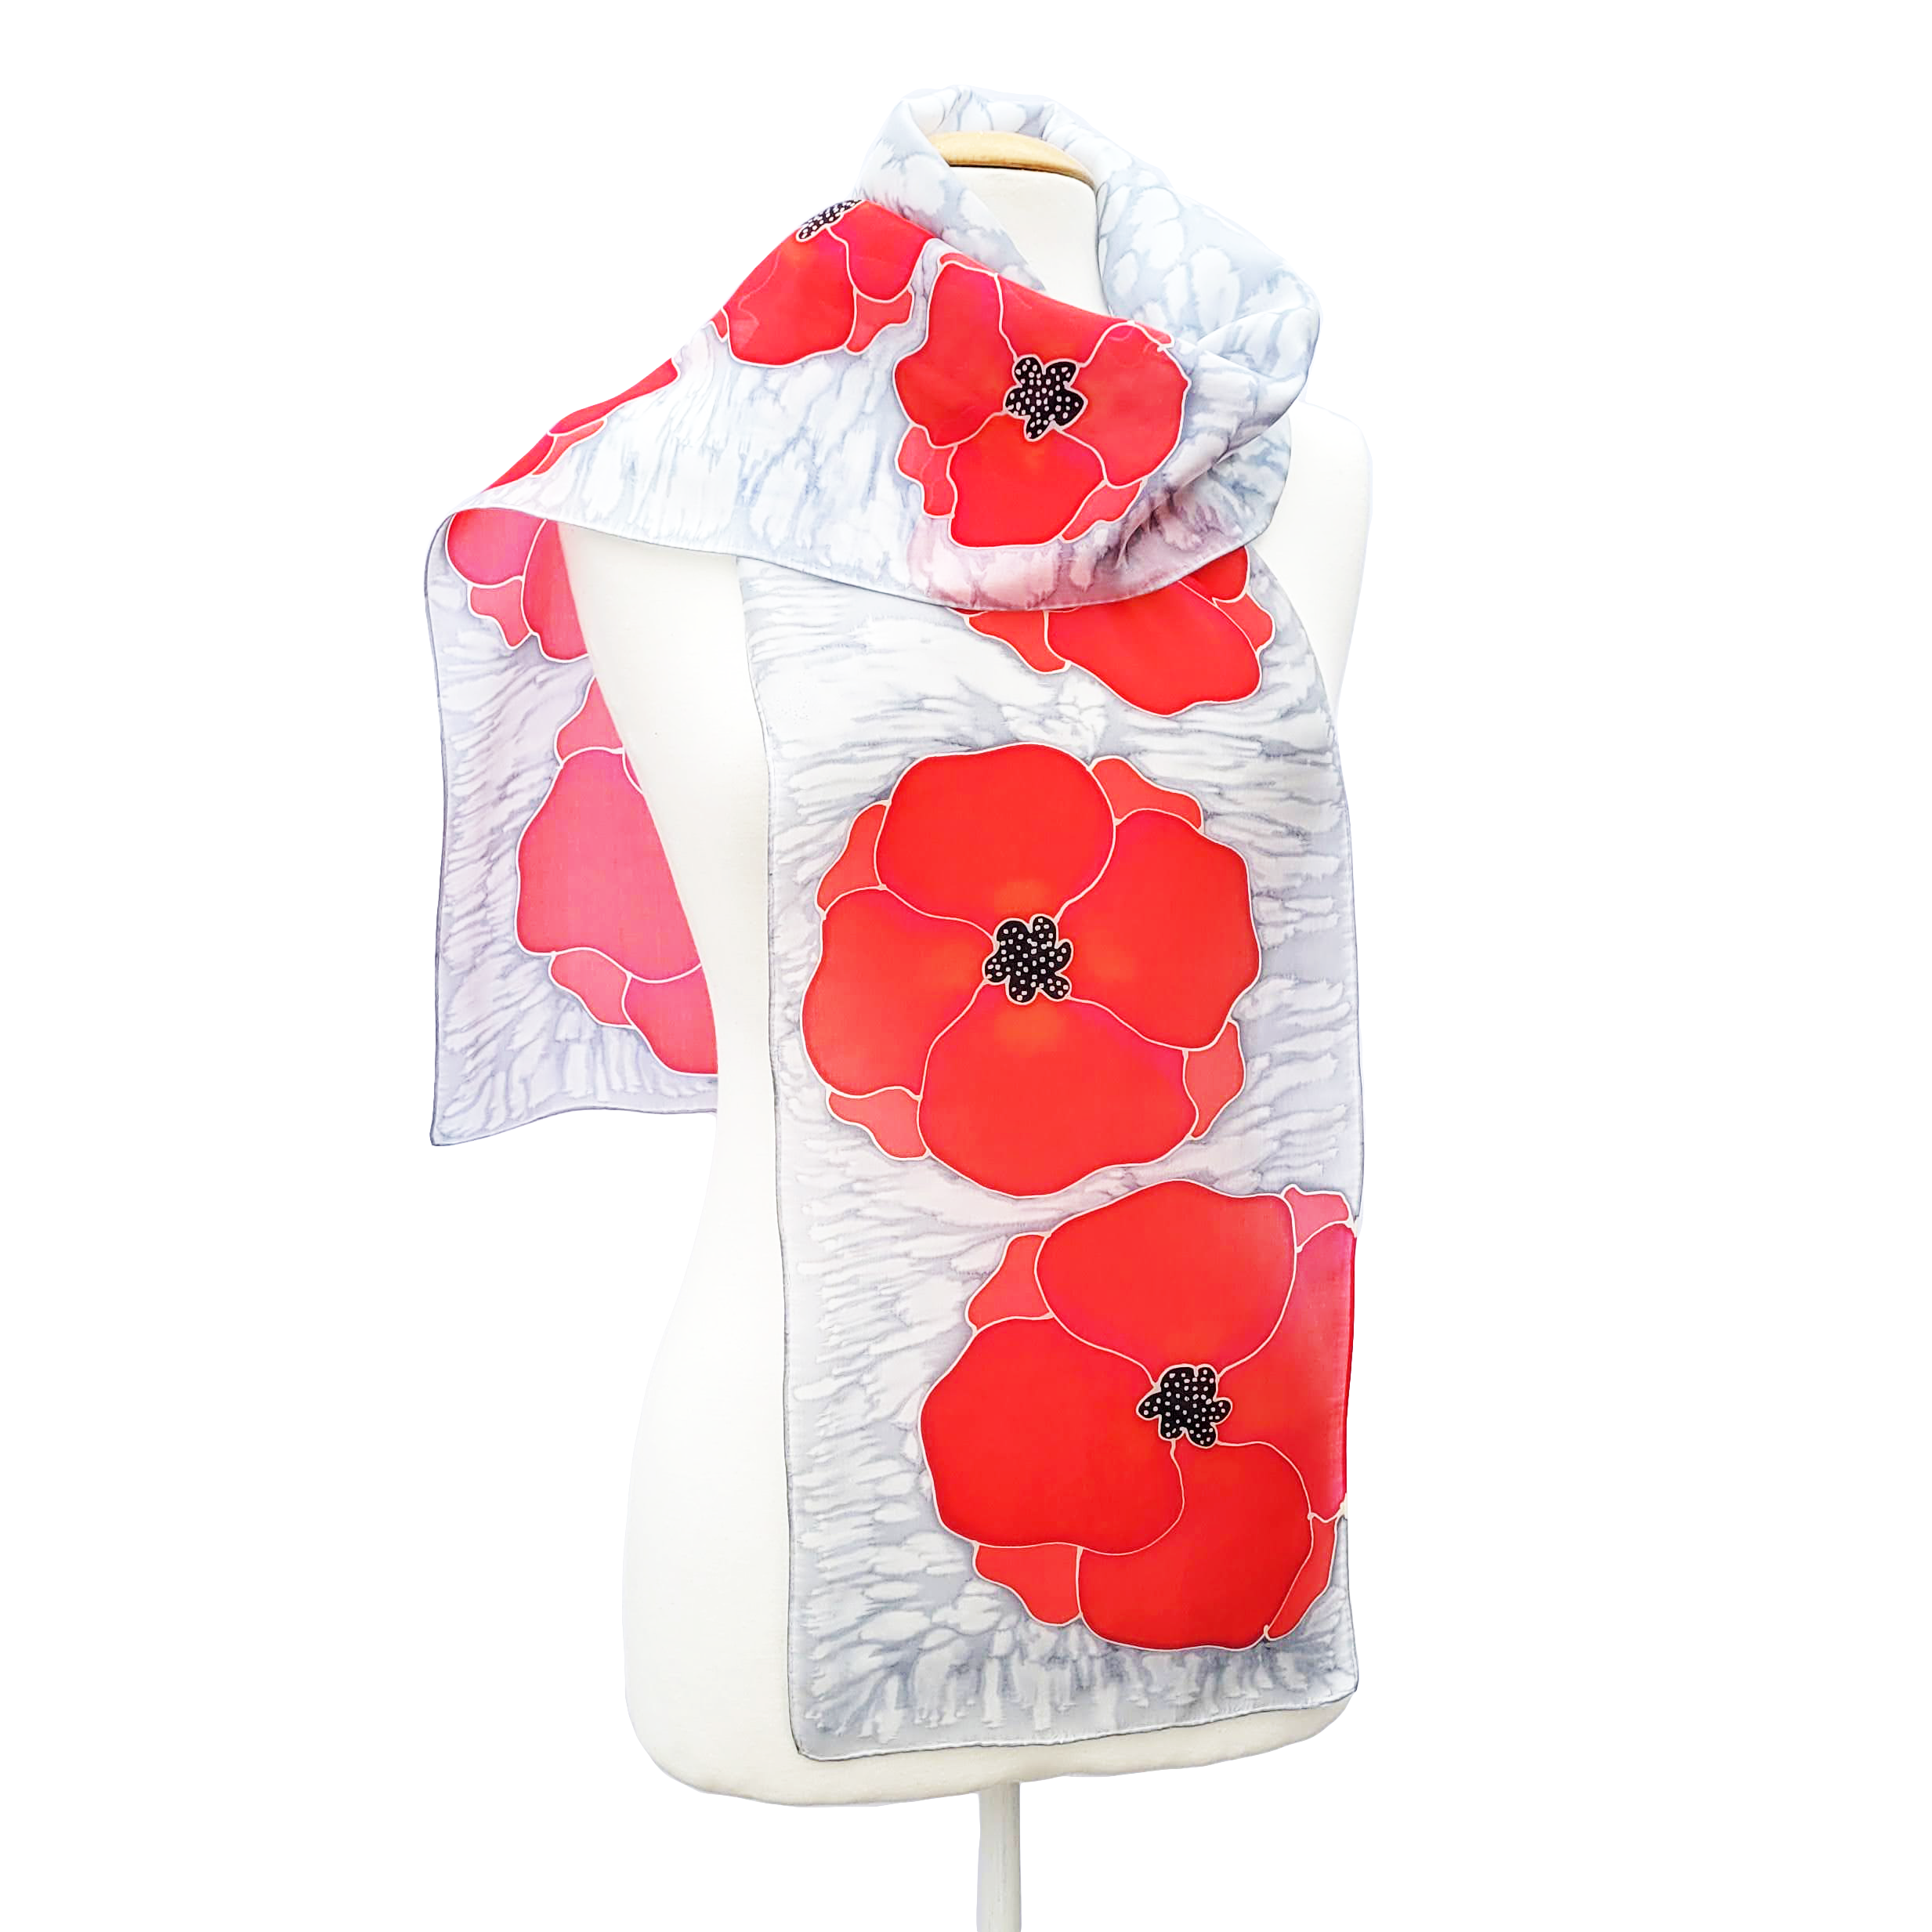 silk clothing accessory hand painted silk scarf red poppy design art handmade by Lynne Kiel